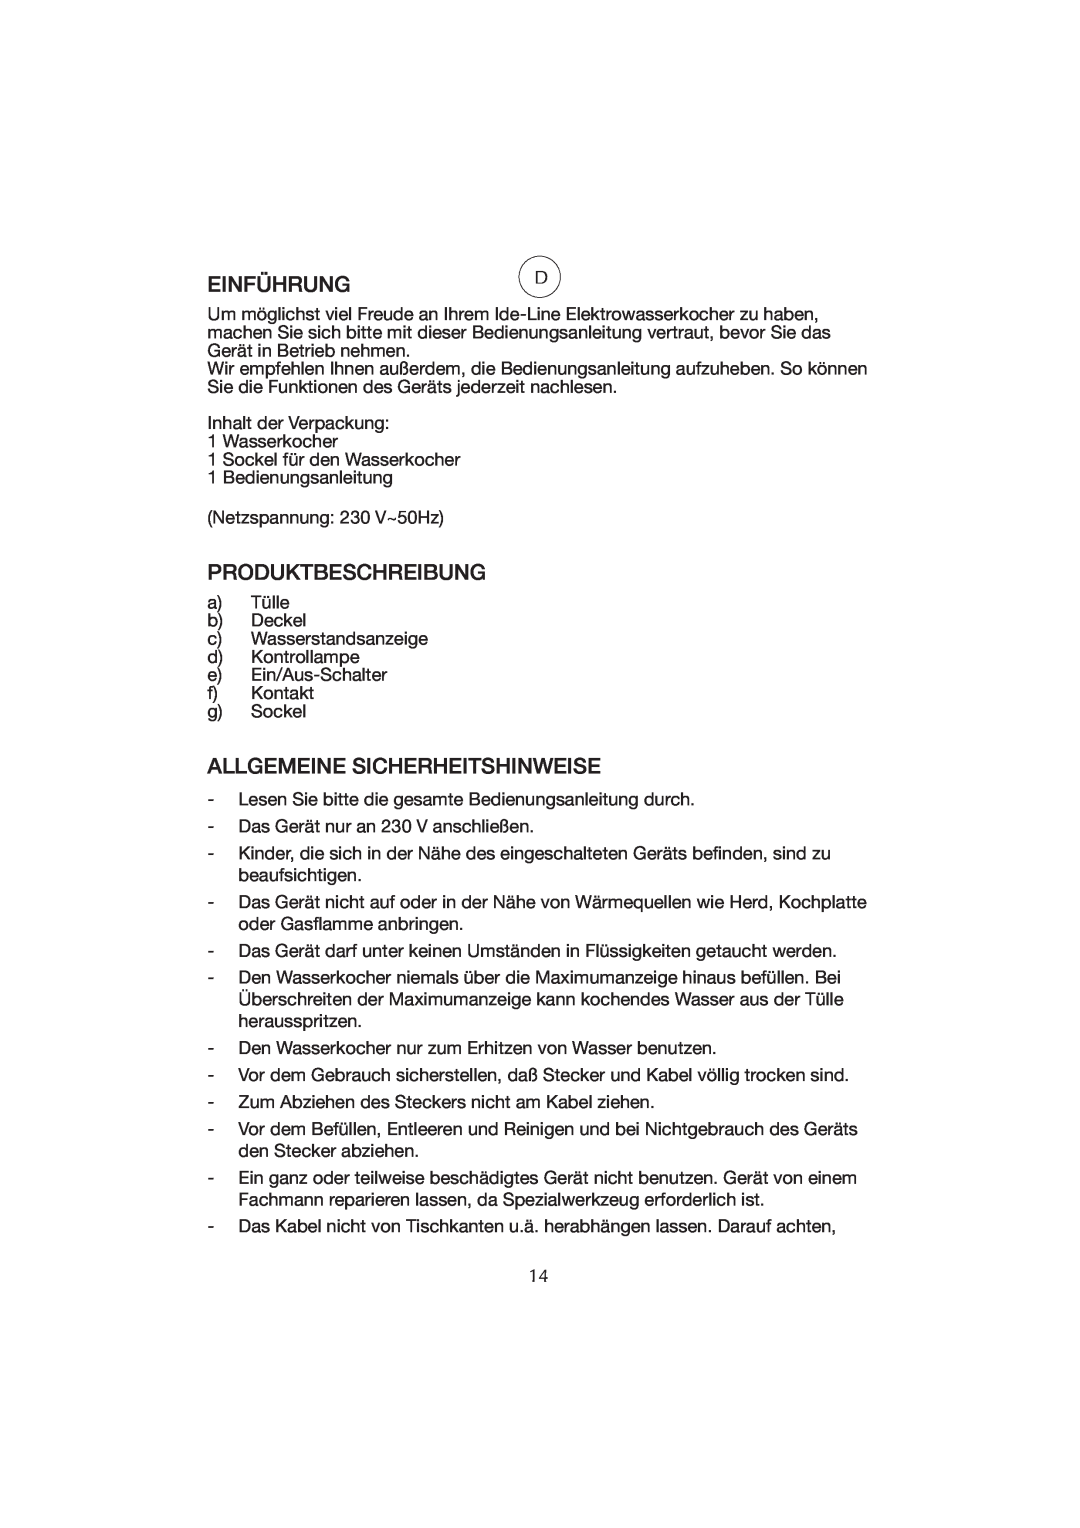 Melissa WK-222 manual Einführungd, Produktbeschreibung, Allgemeine Sicherheitshinweise 